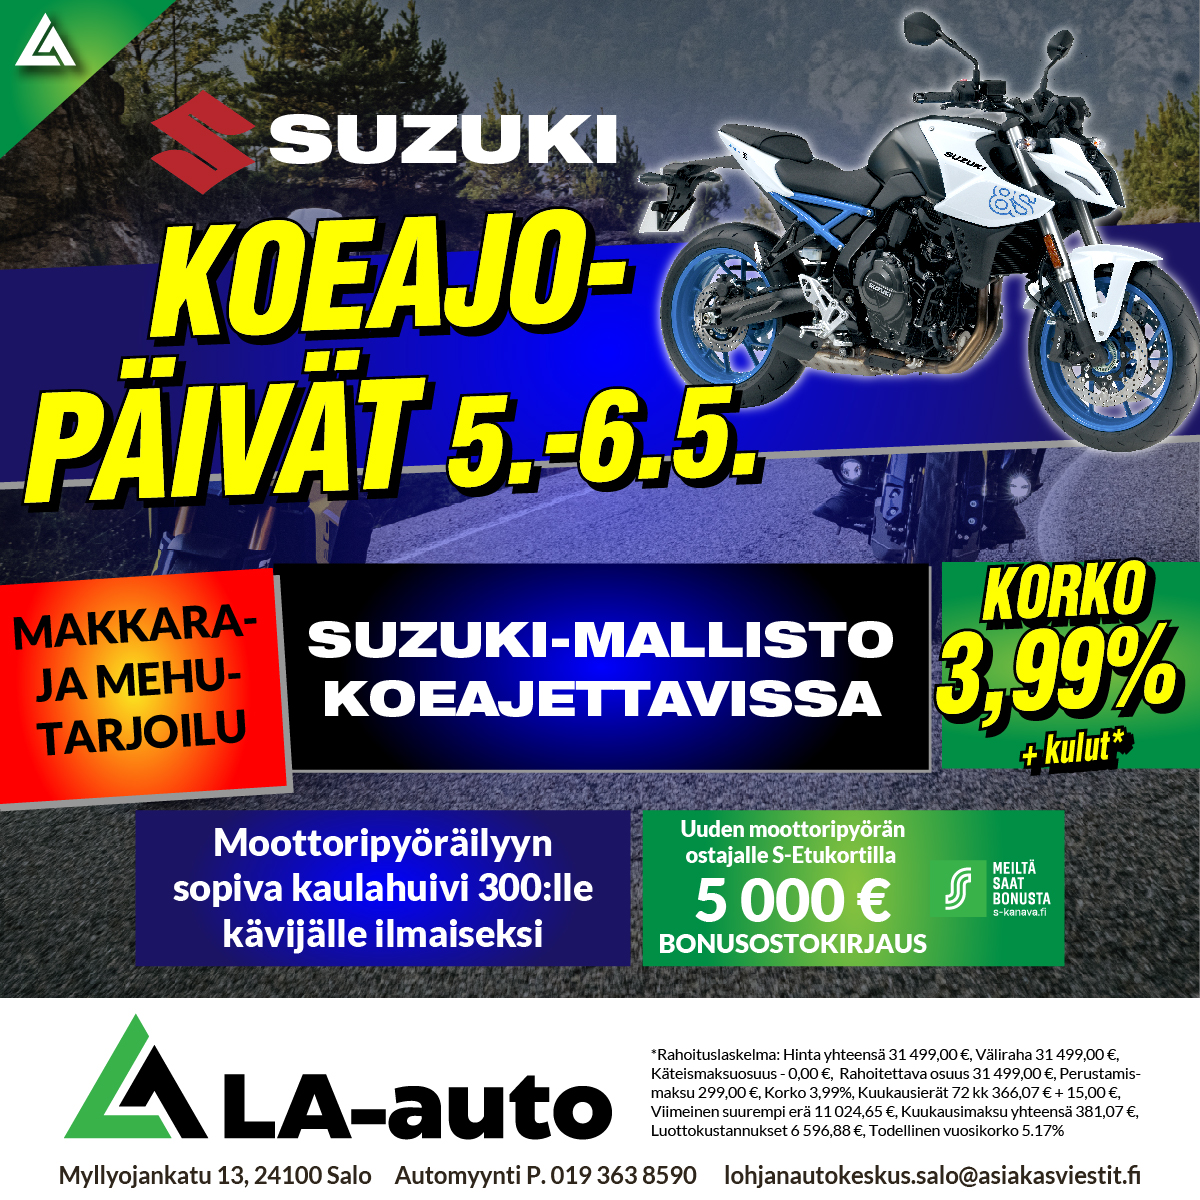 Suzuki Koeajo-päivät 5.–6.5. Makkara- ja mehutarjoilu, korko 3,99% + kulut, uuden moottoripyörän ostajalle S-Etukortilla 5000€ bonusostokirjaus.